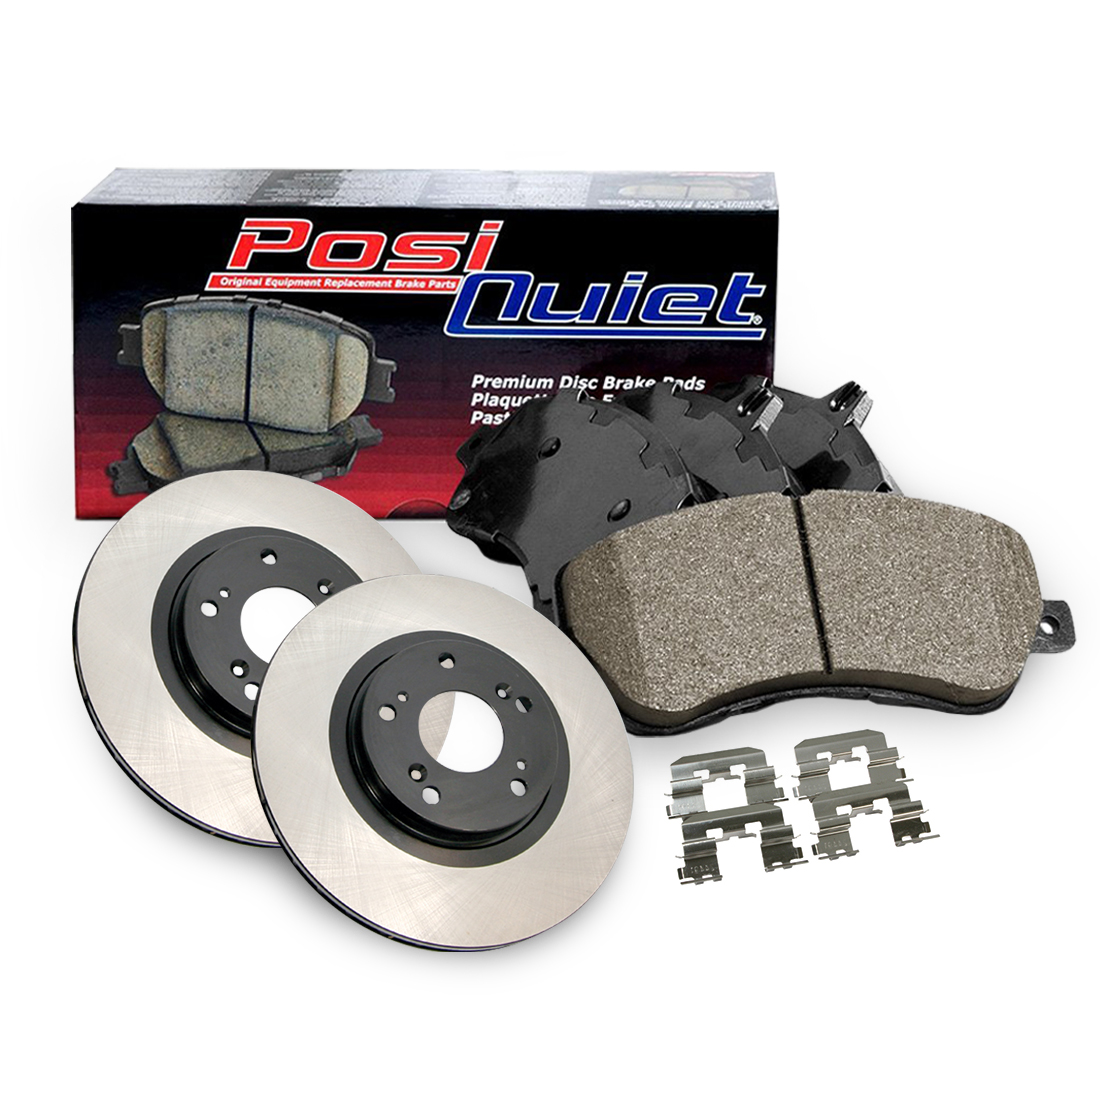 Centric Parts Rear Premium Brake Rotor&Posi-Quiet Ceramic Pad 3PCS For 2007-2010 Kia Rondo